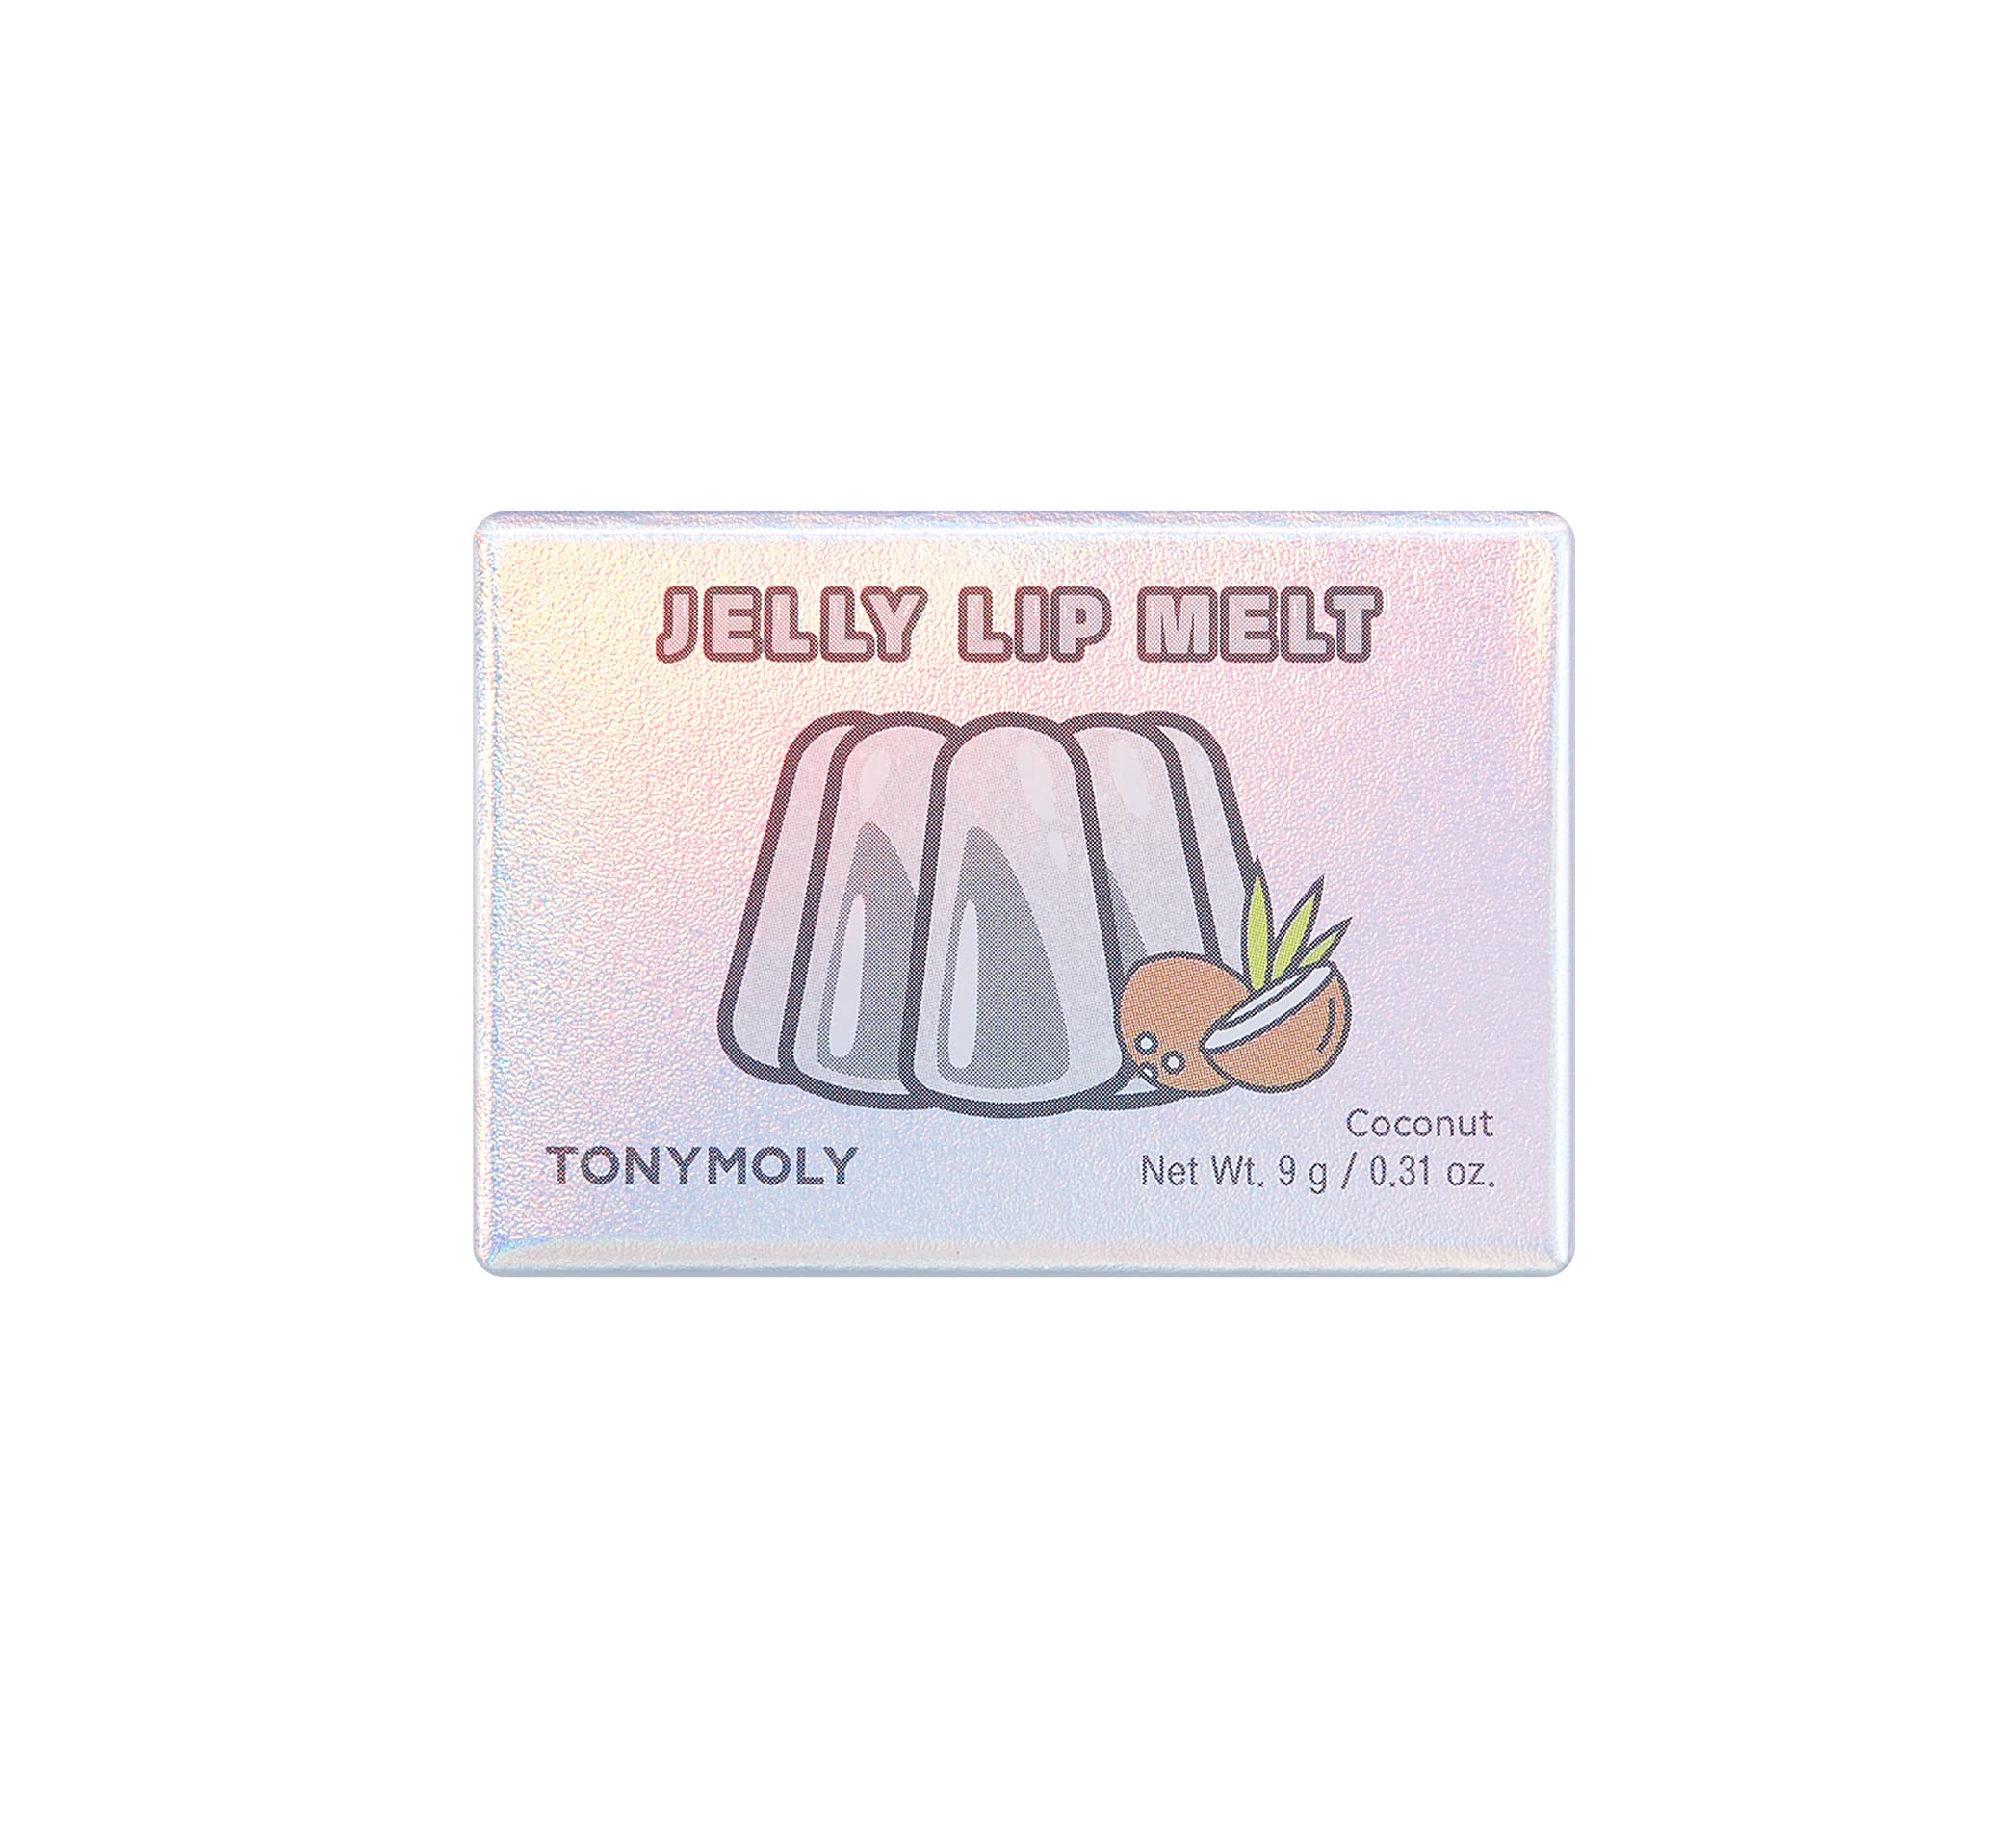 TONYMOLY Jelly Lip Melt, Coconut